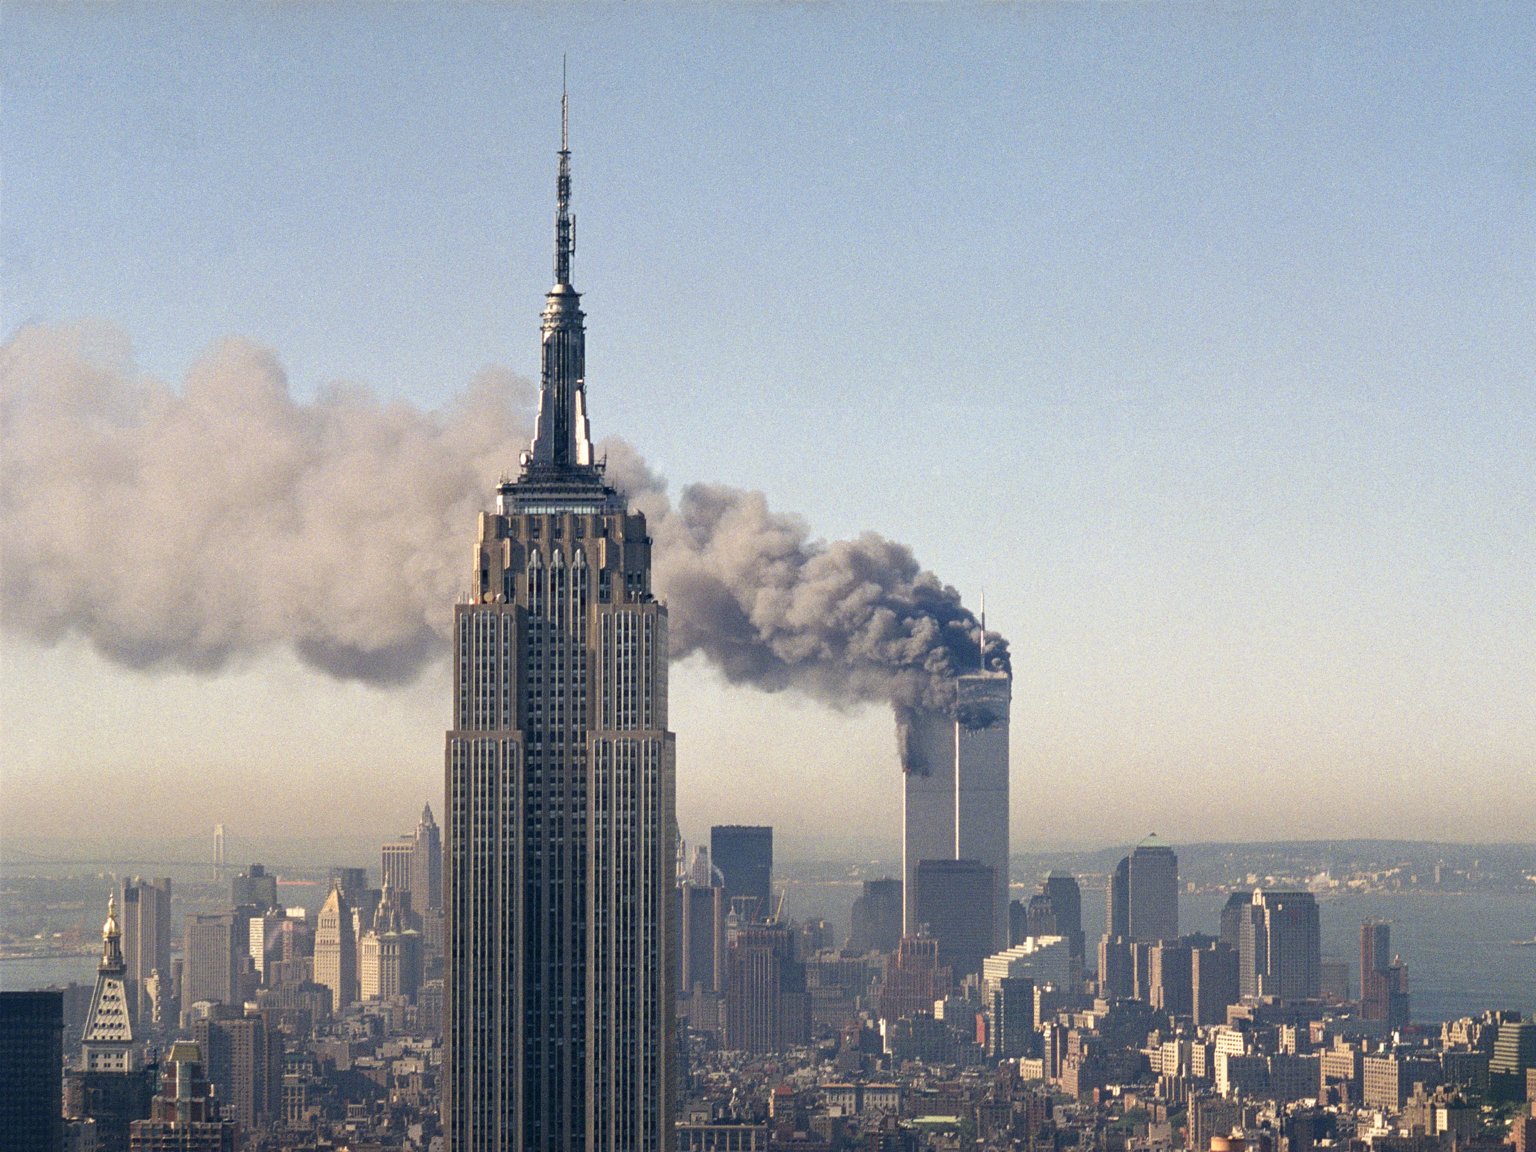 就任後まもなく、2001年9月11日に「9.11事件」となった